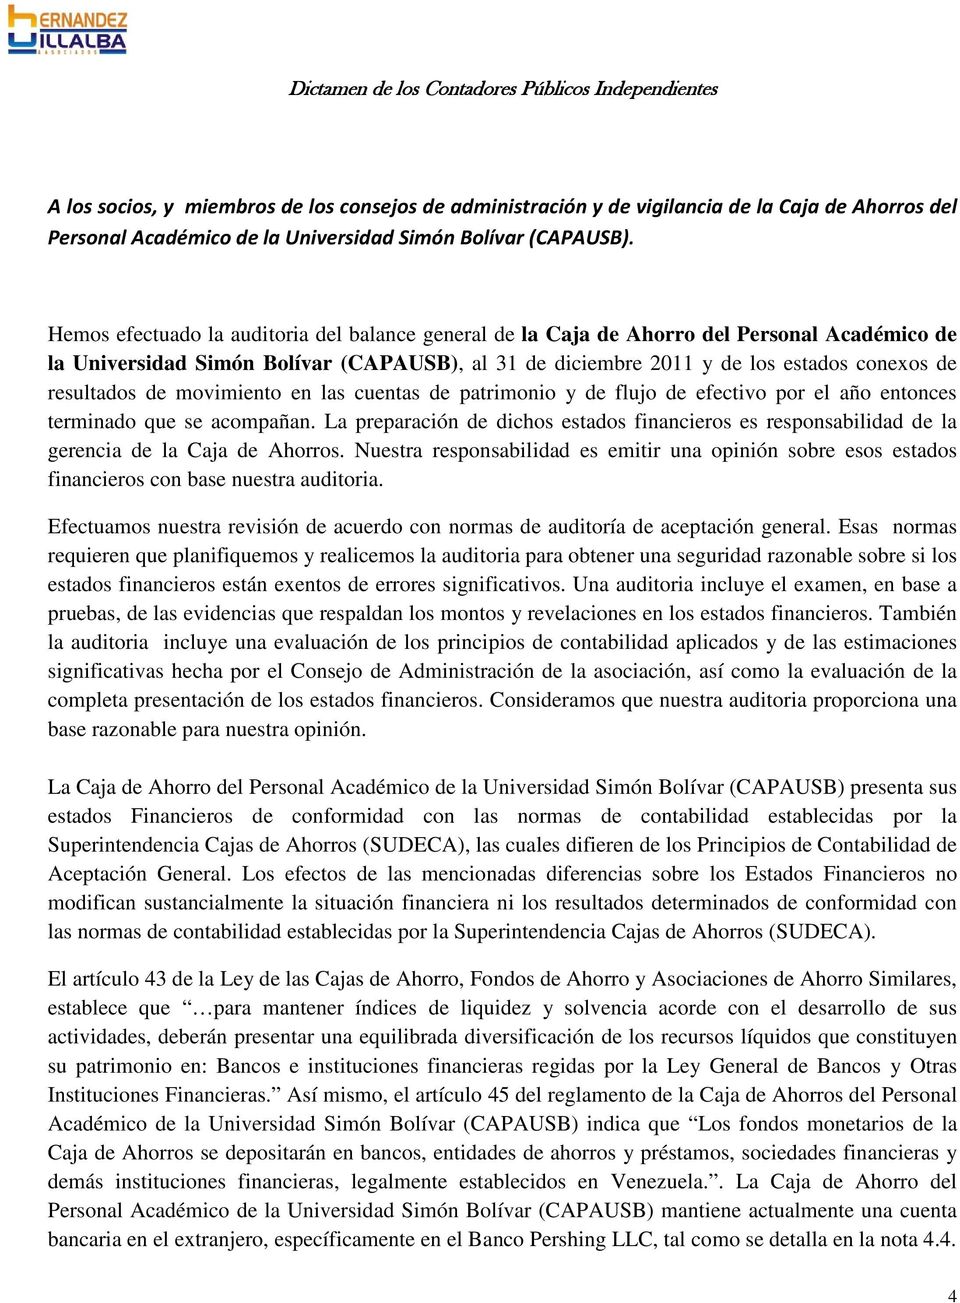 Hemos efectuado la auditoria del balance general de la Caja de Ahorro del Personal Académico de la Universidad Simón Bolívar (CAPAUSB), al 31 de diciembre 2011 y de los estados conexos de resultados